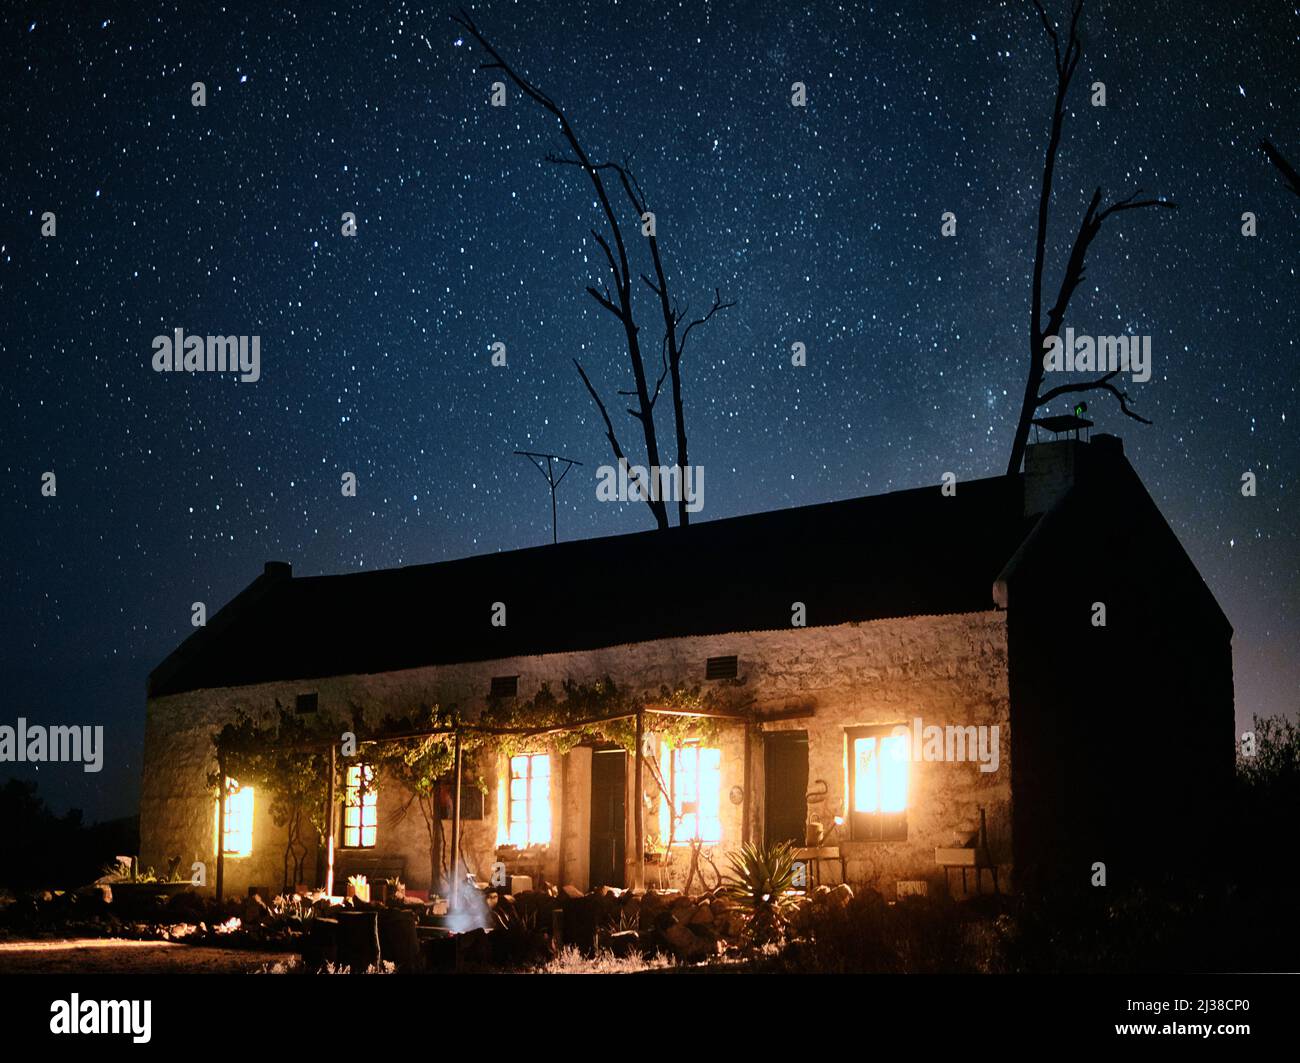 Segui la luce fino al ritorno a casa. Foto di una casa in campagna in una notte stellata e scura. Foto Stock